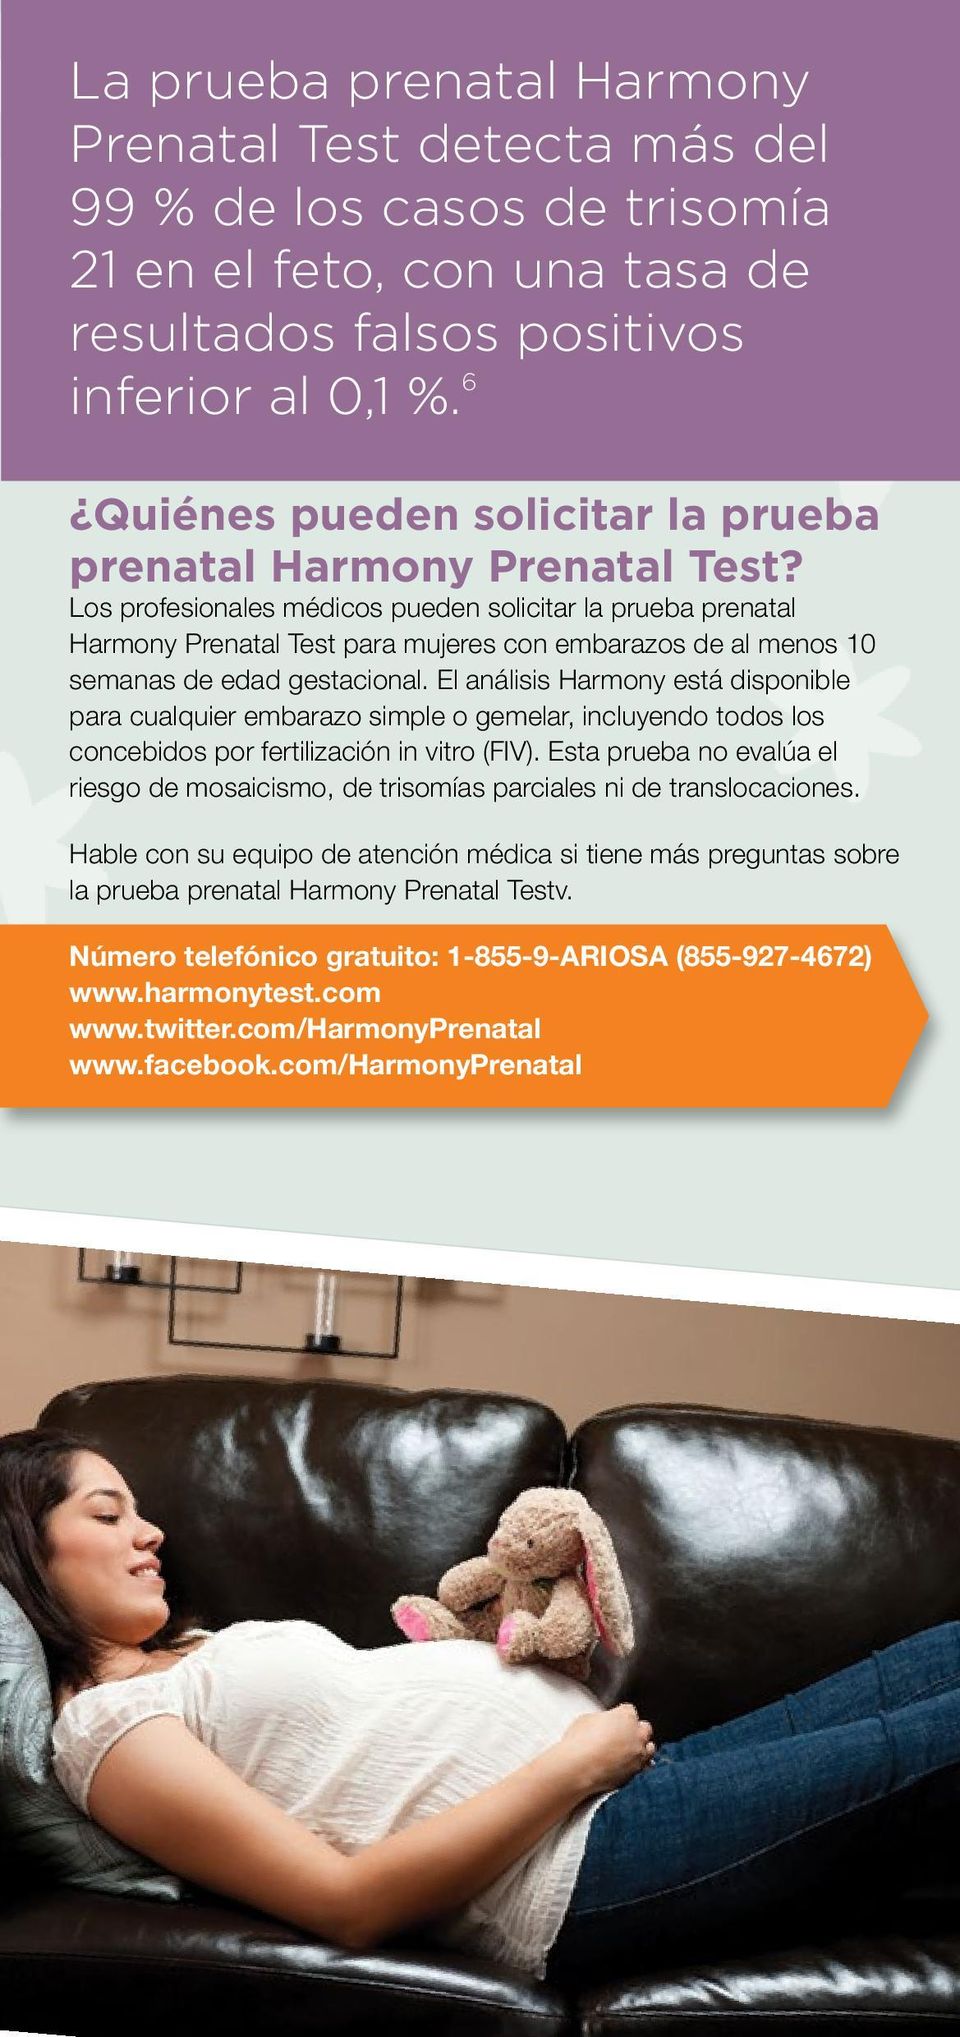 Los profesionales médicos pueden solicitar la prueba prenatal Harmony Prenatal Test para mujeres con embarazos de al menos 10 semanas de edad gestacional.